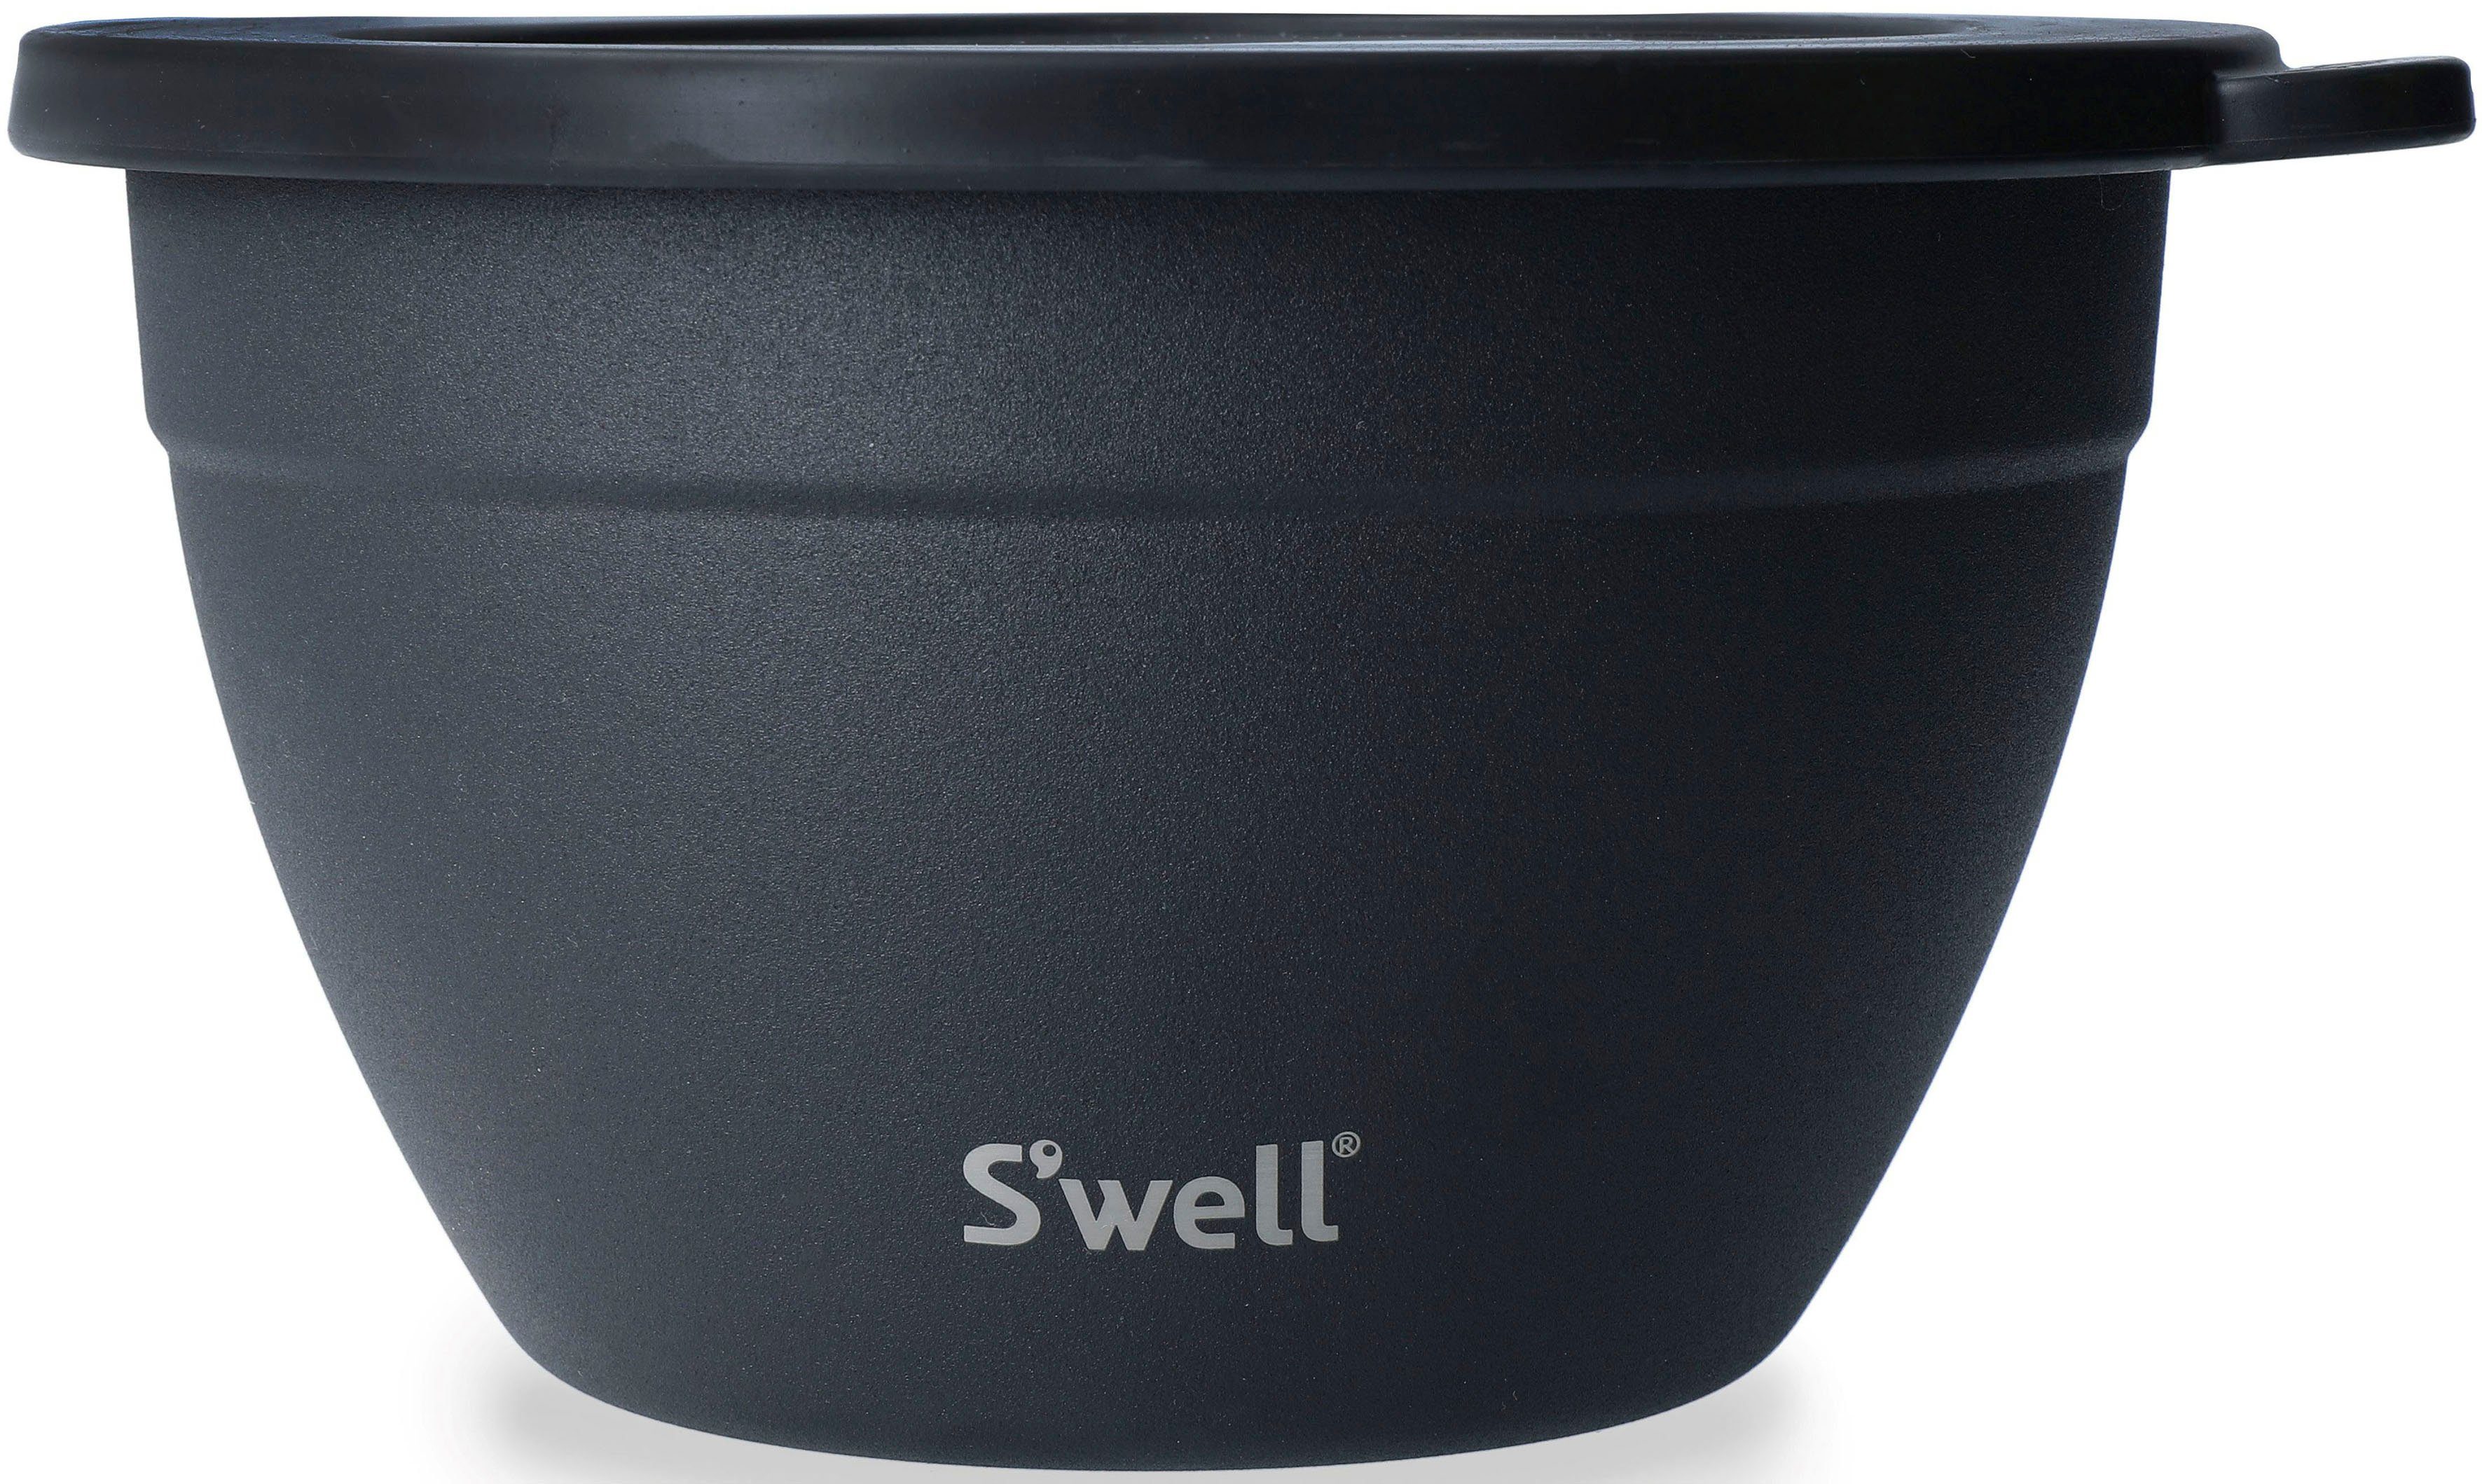 Bowl Salad 1.9L, vakuumisolierten Salatschüssel Kit, S'well S'well (3-tlg), Schwarz Edelstahl, Außenschale Onyx Therma-S'well®-Technologie,